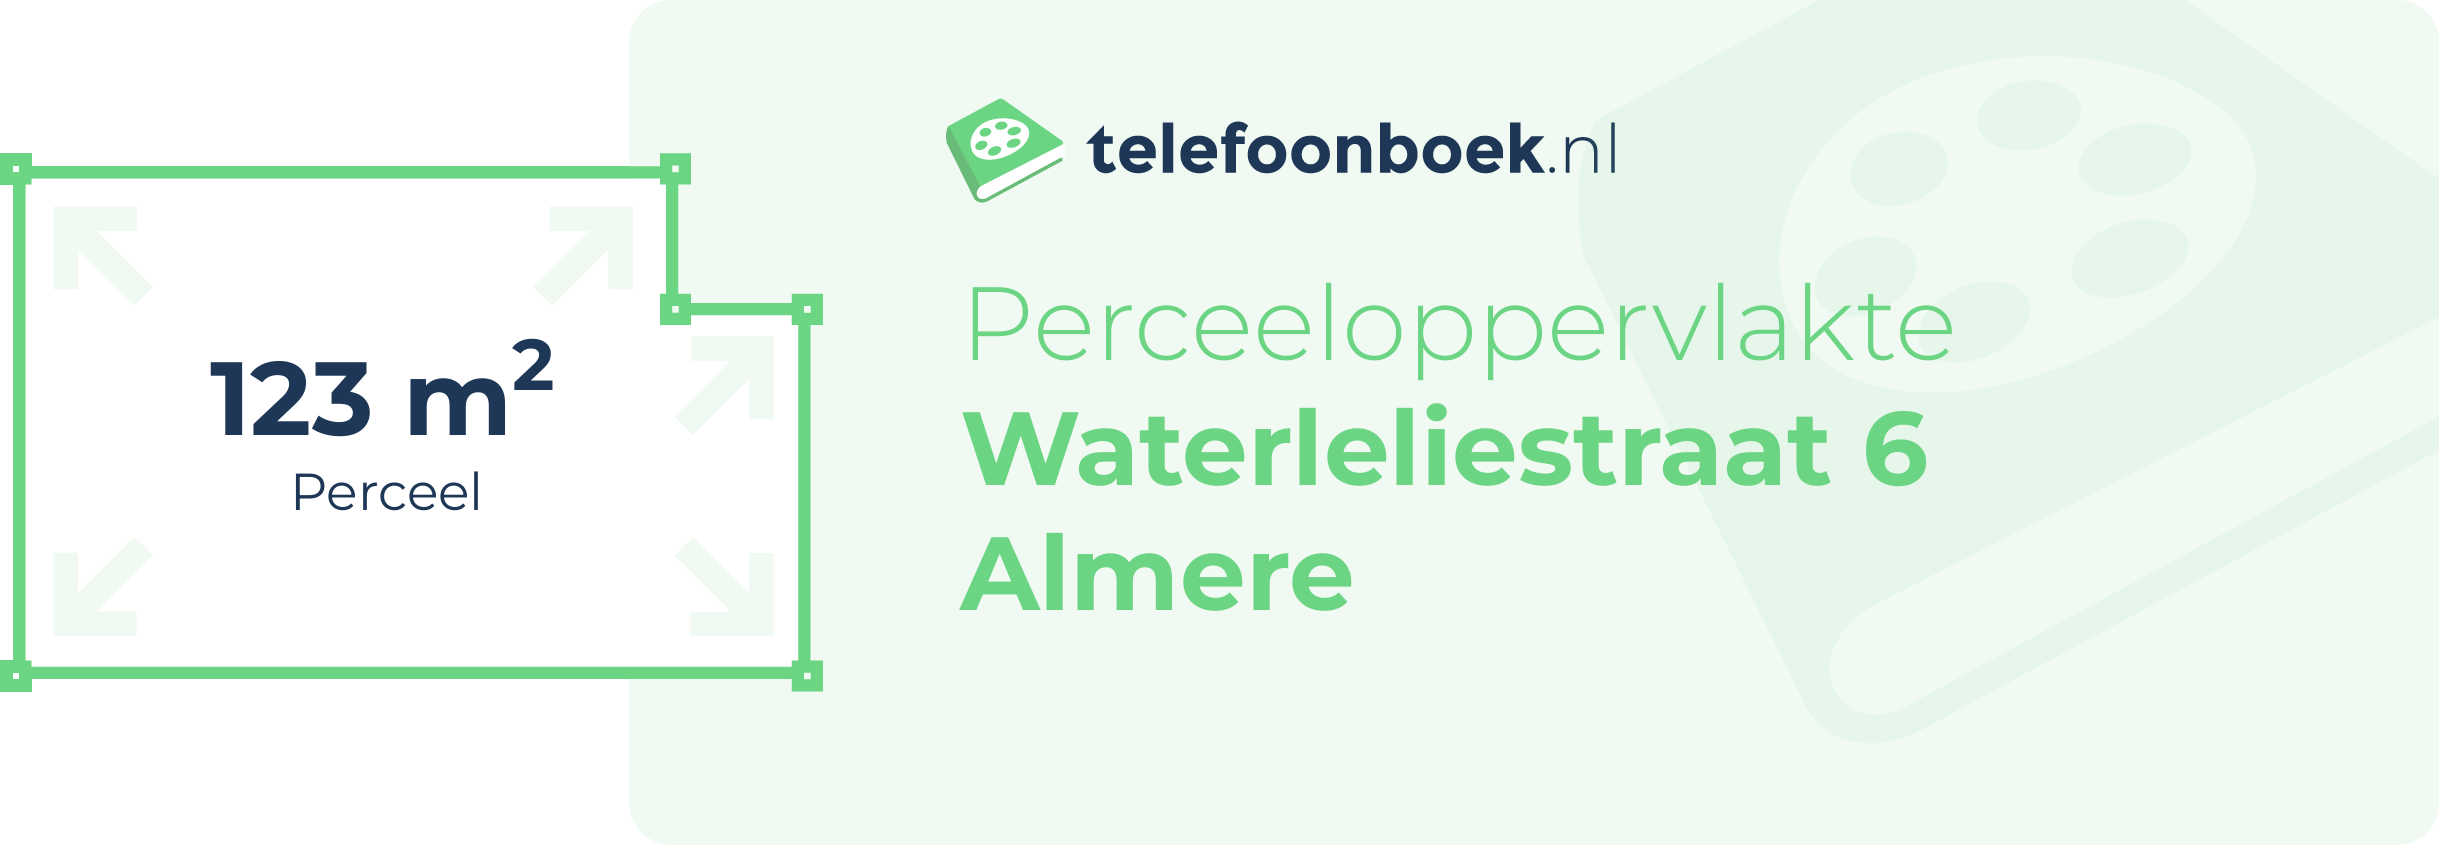 Perceeloppervlakte Waterleliestraat 6 Almere